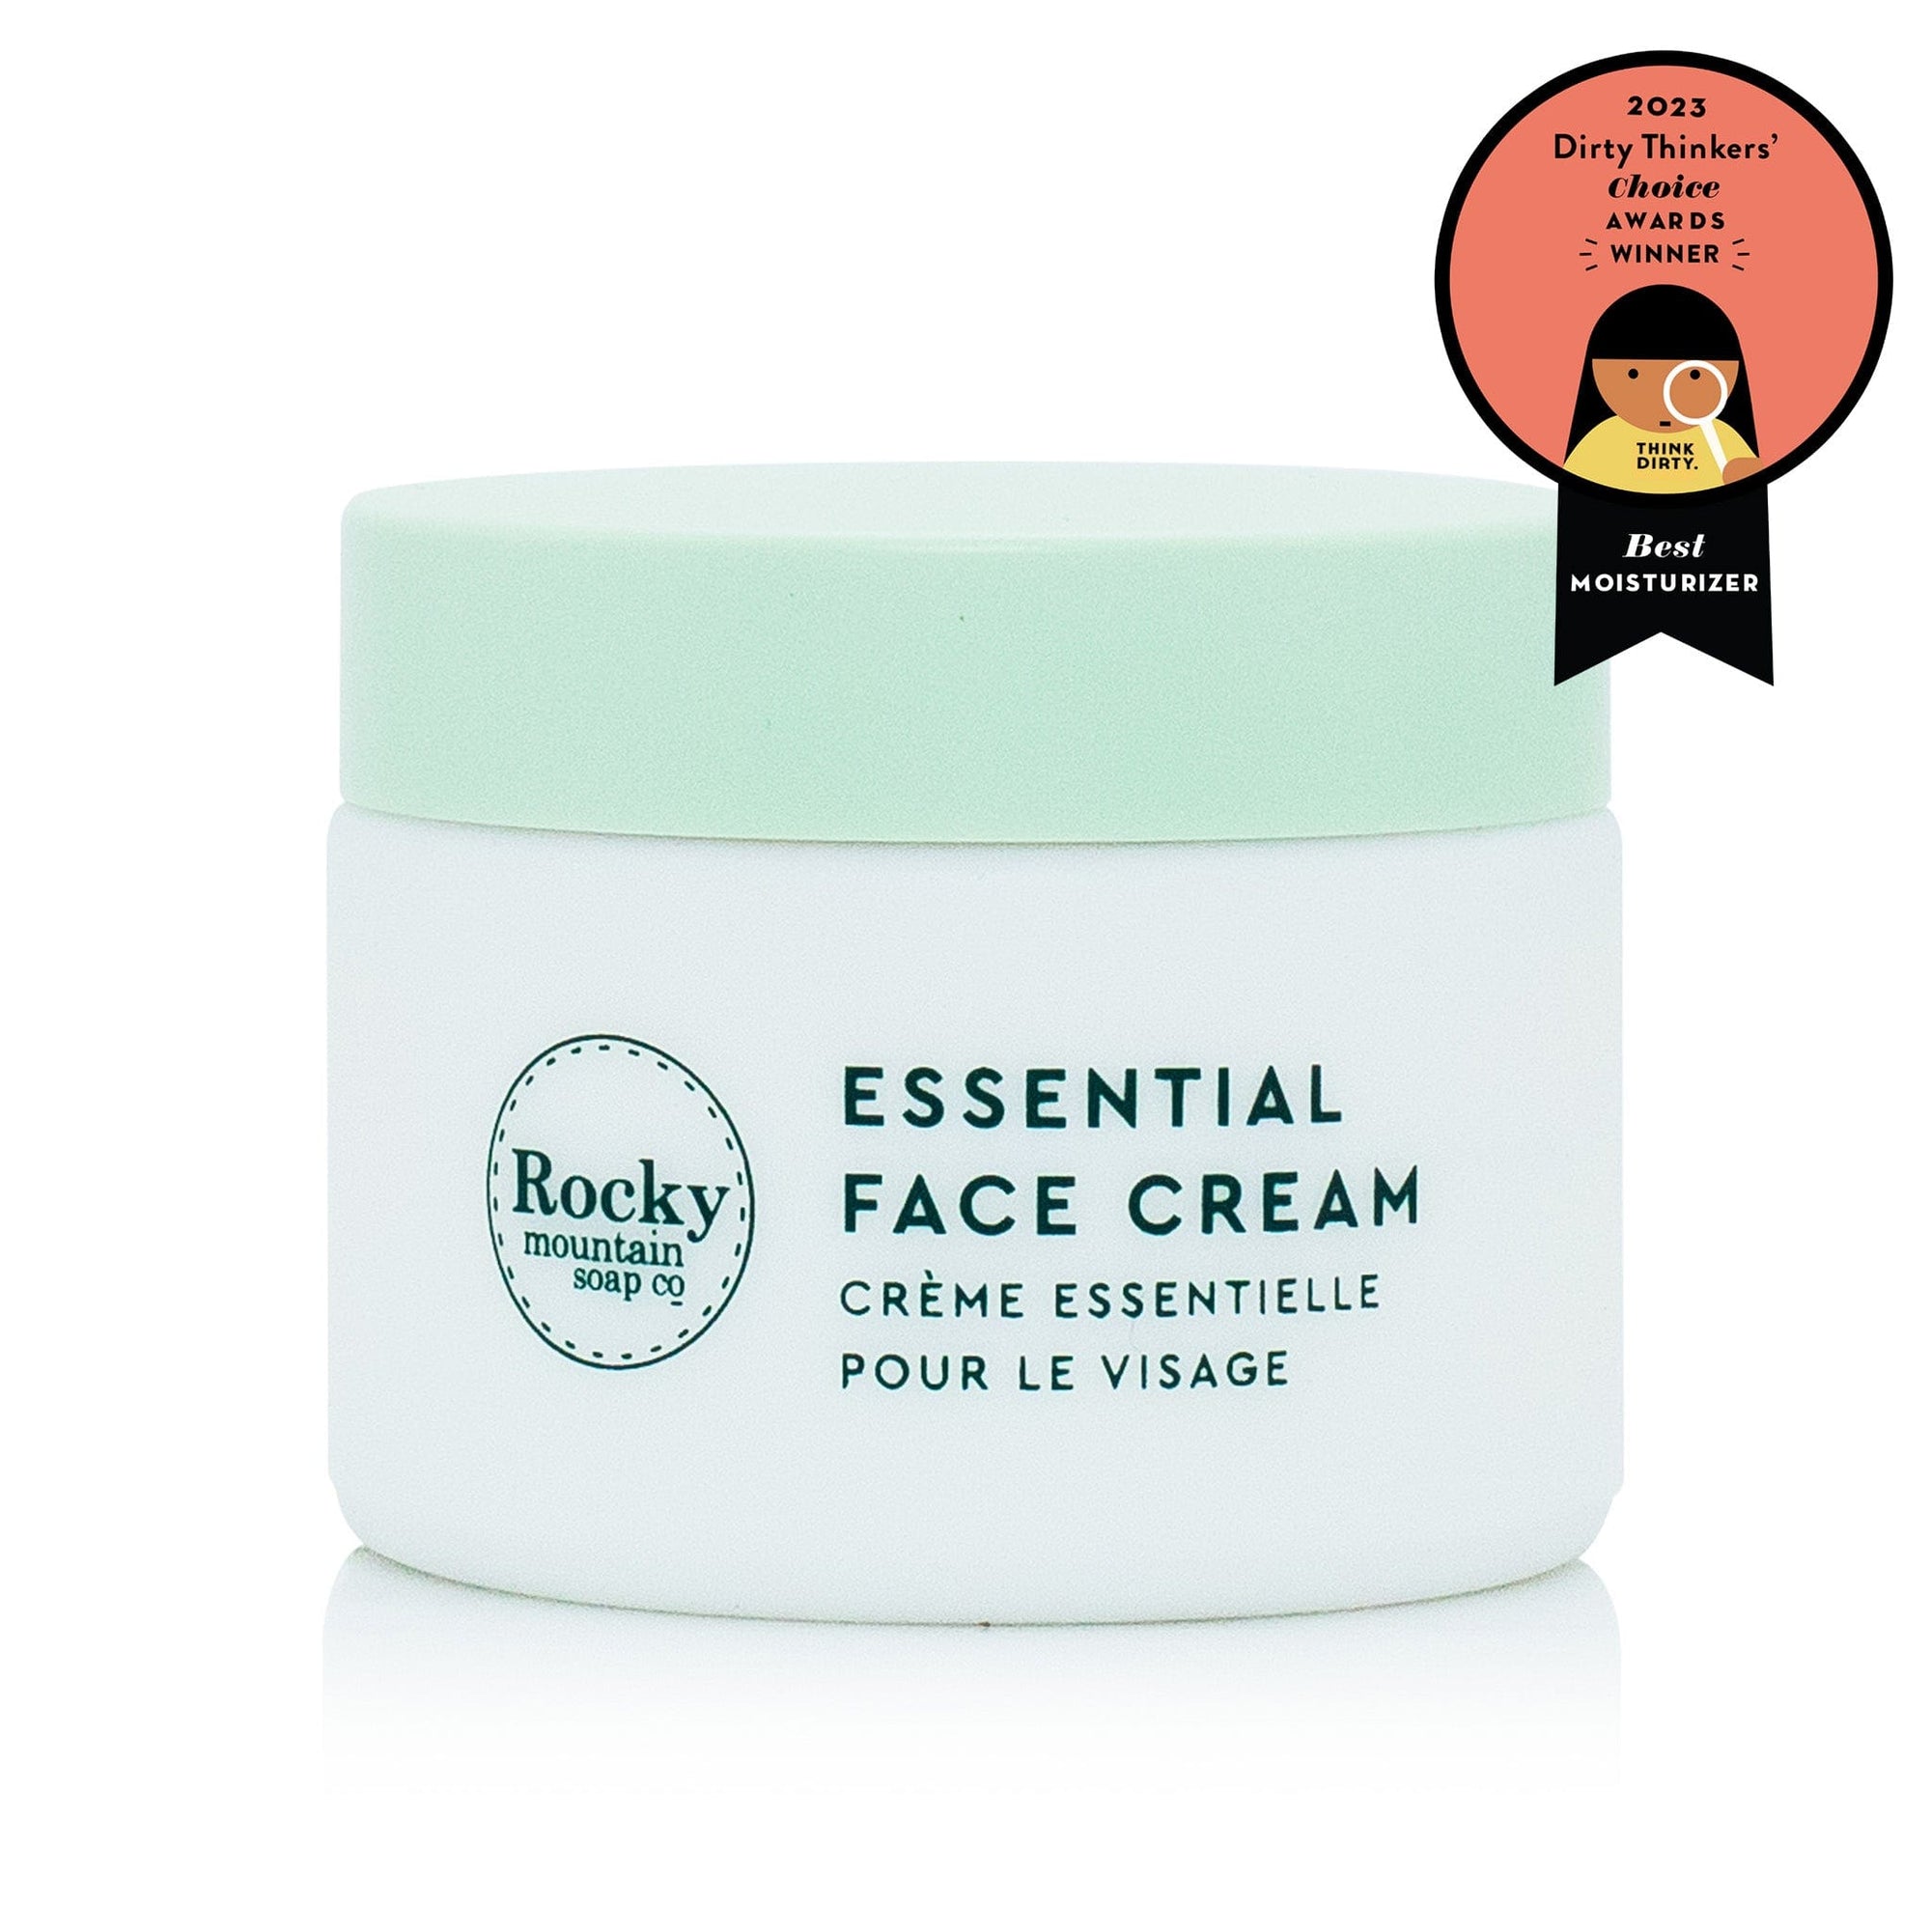 Essential Face Cream